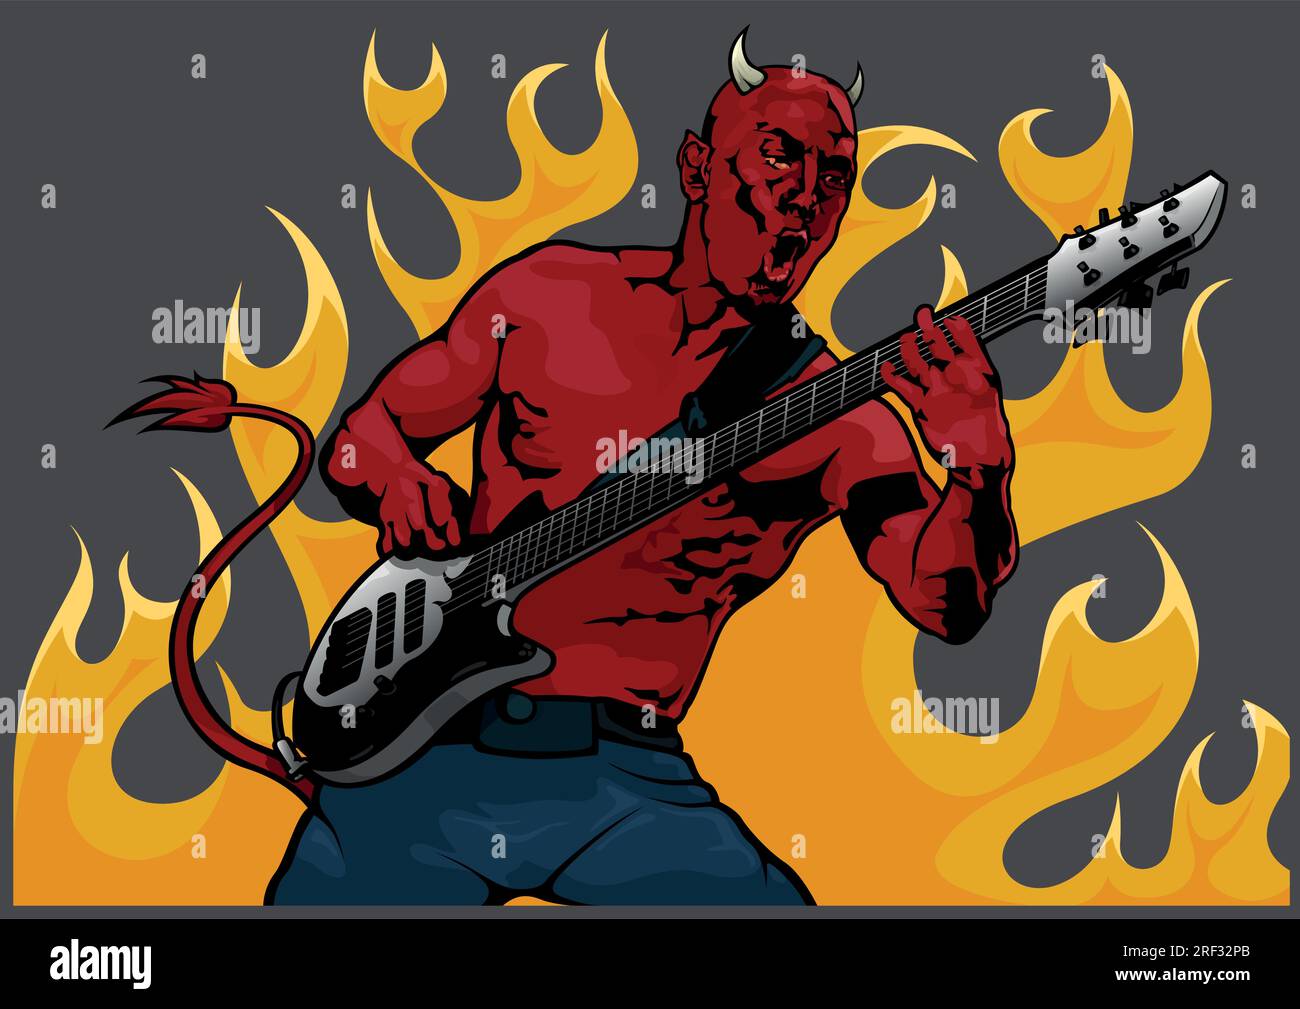 Let It Die by Foo Fighters - Electric Guitar - Digital Sheet Music